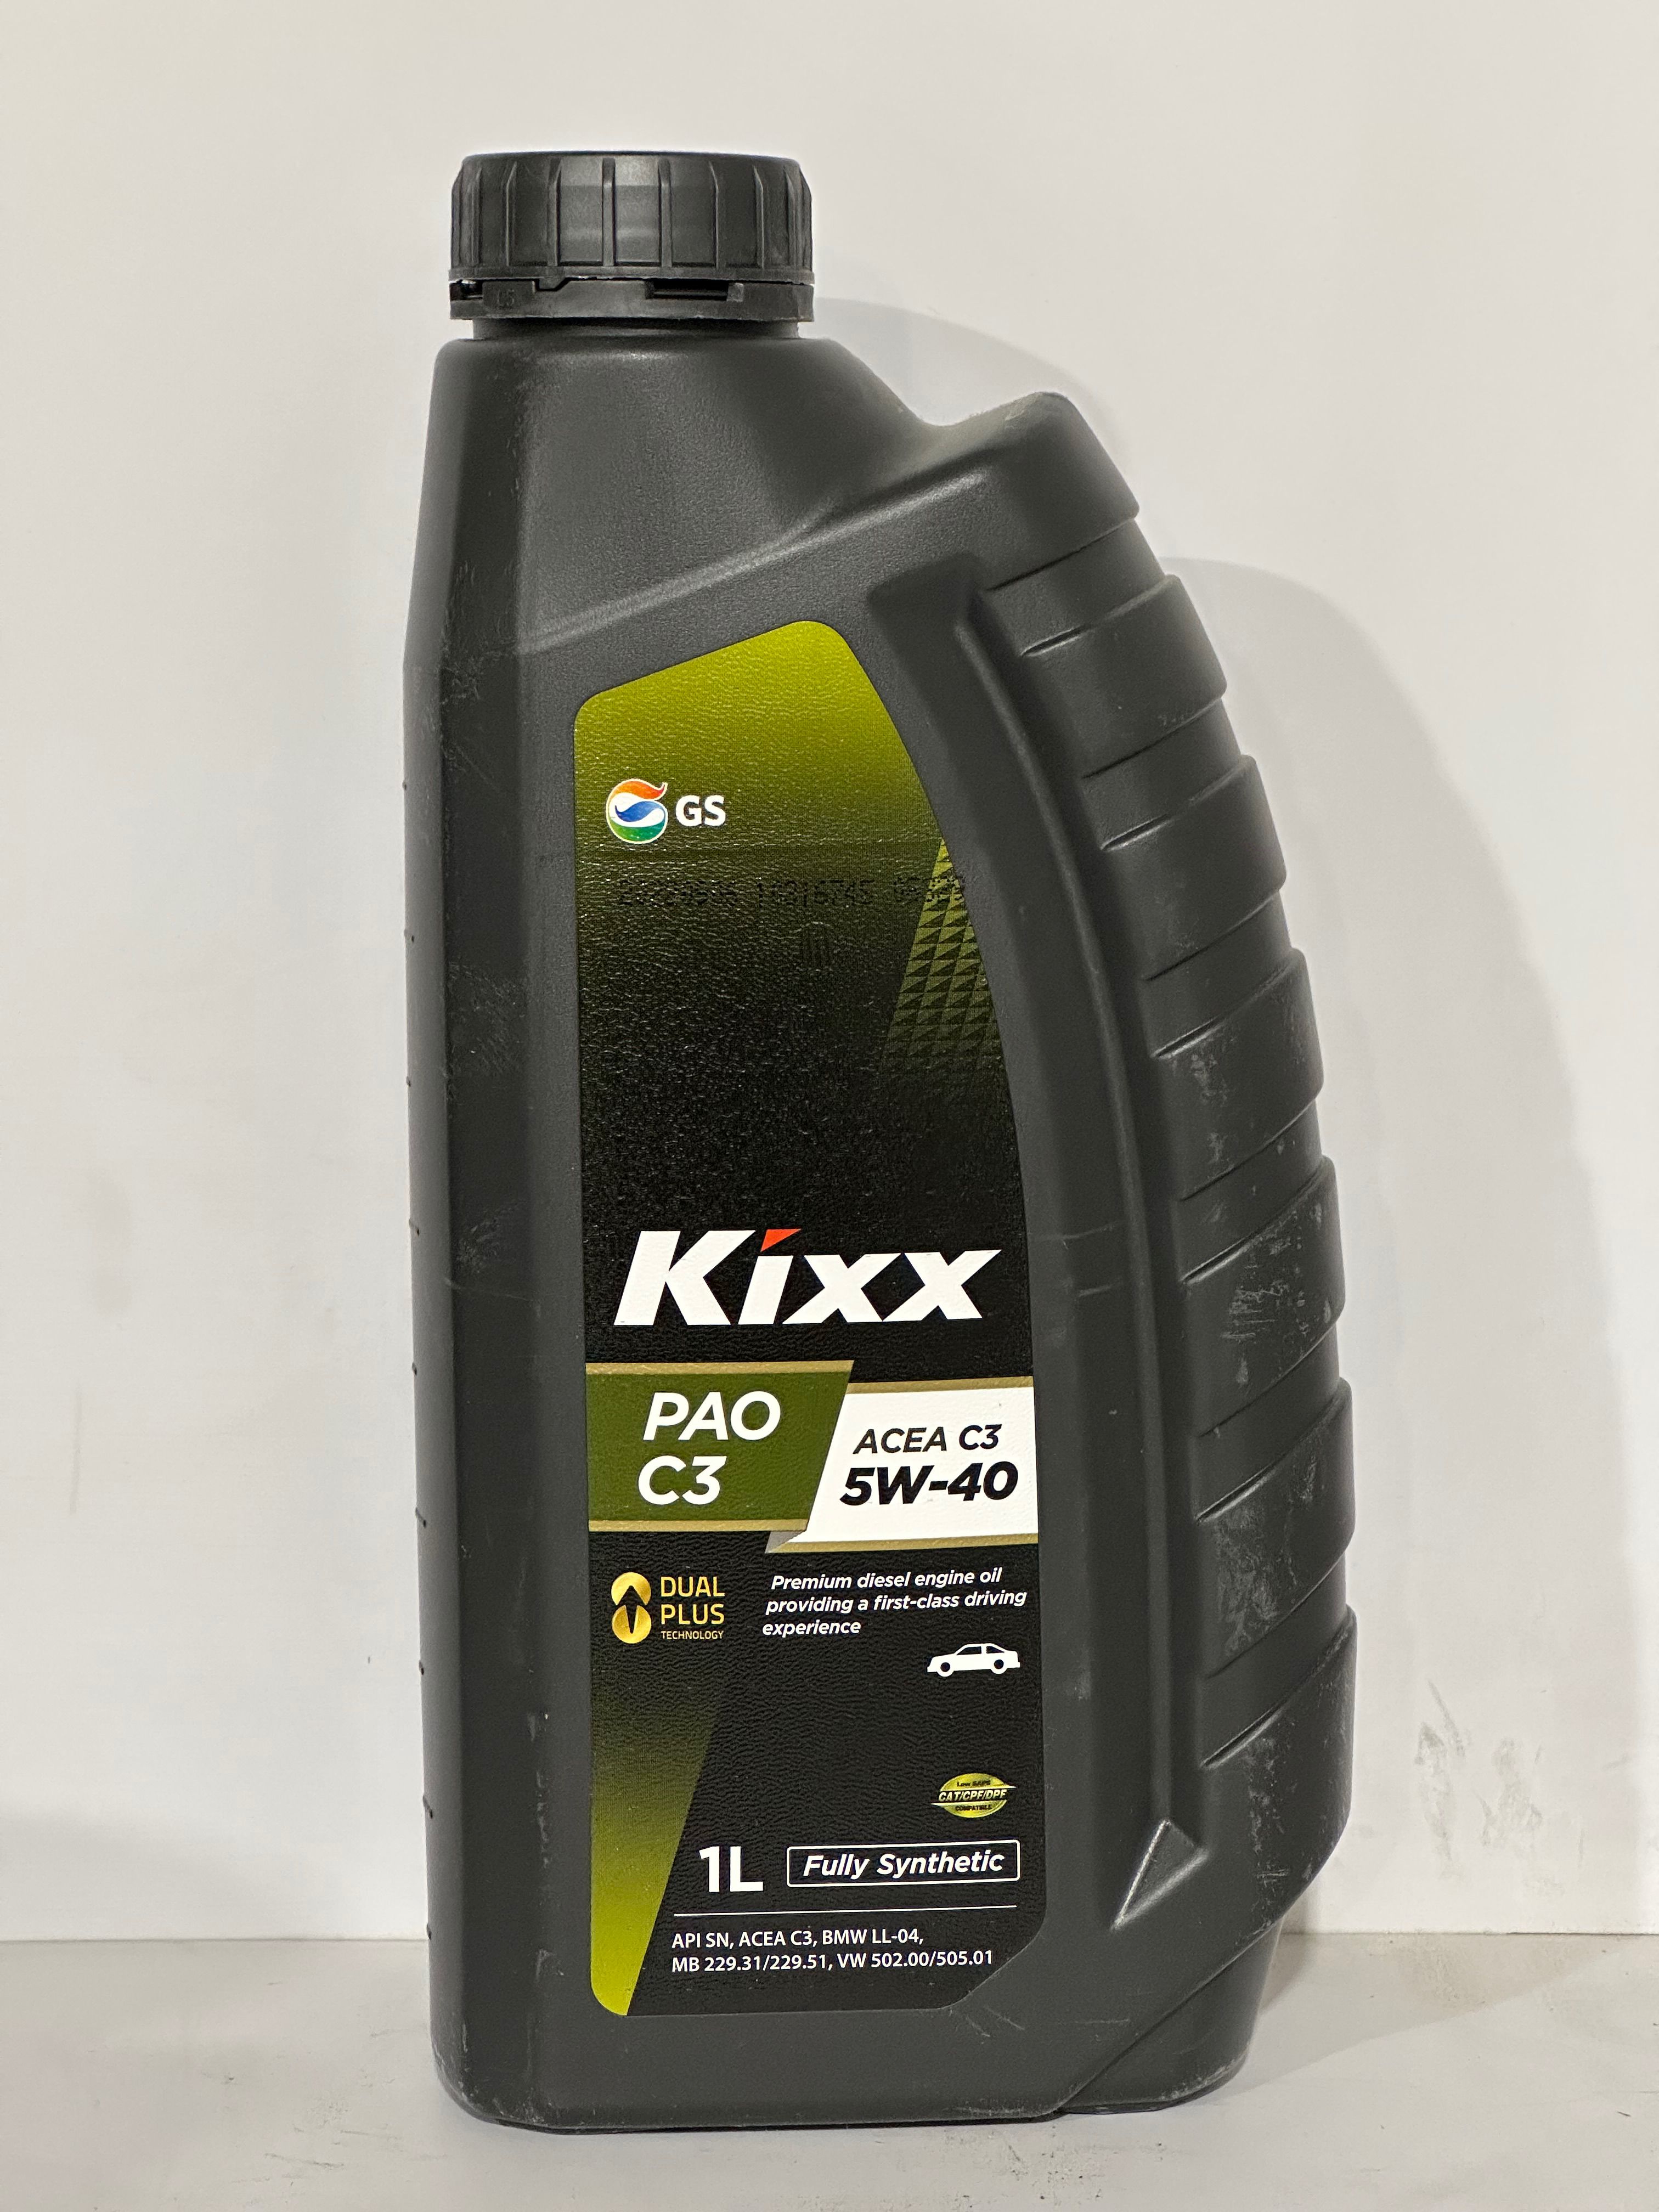 Kixx pao 1